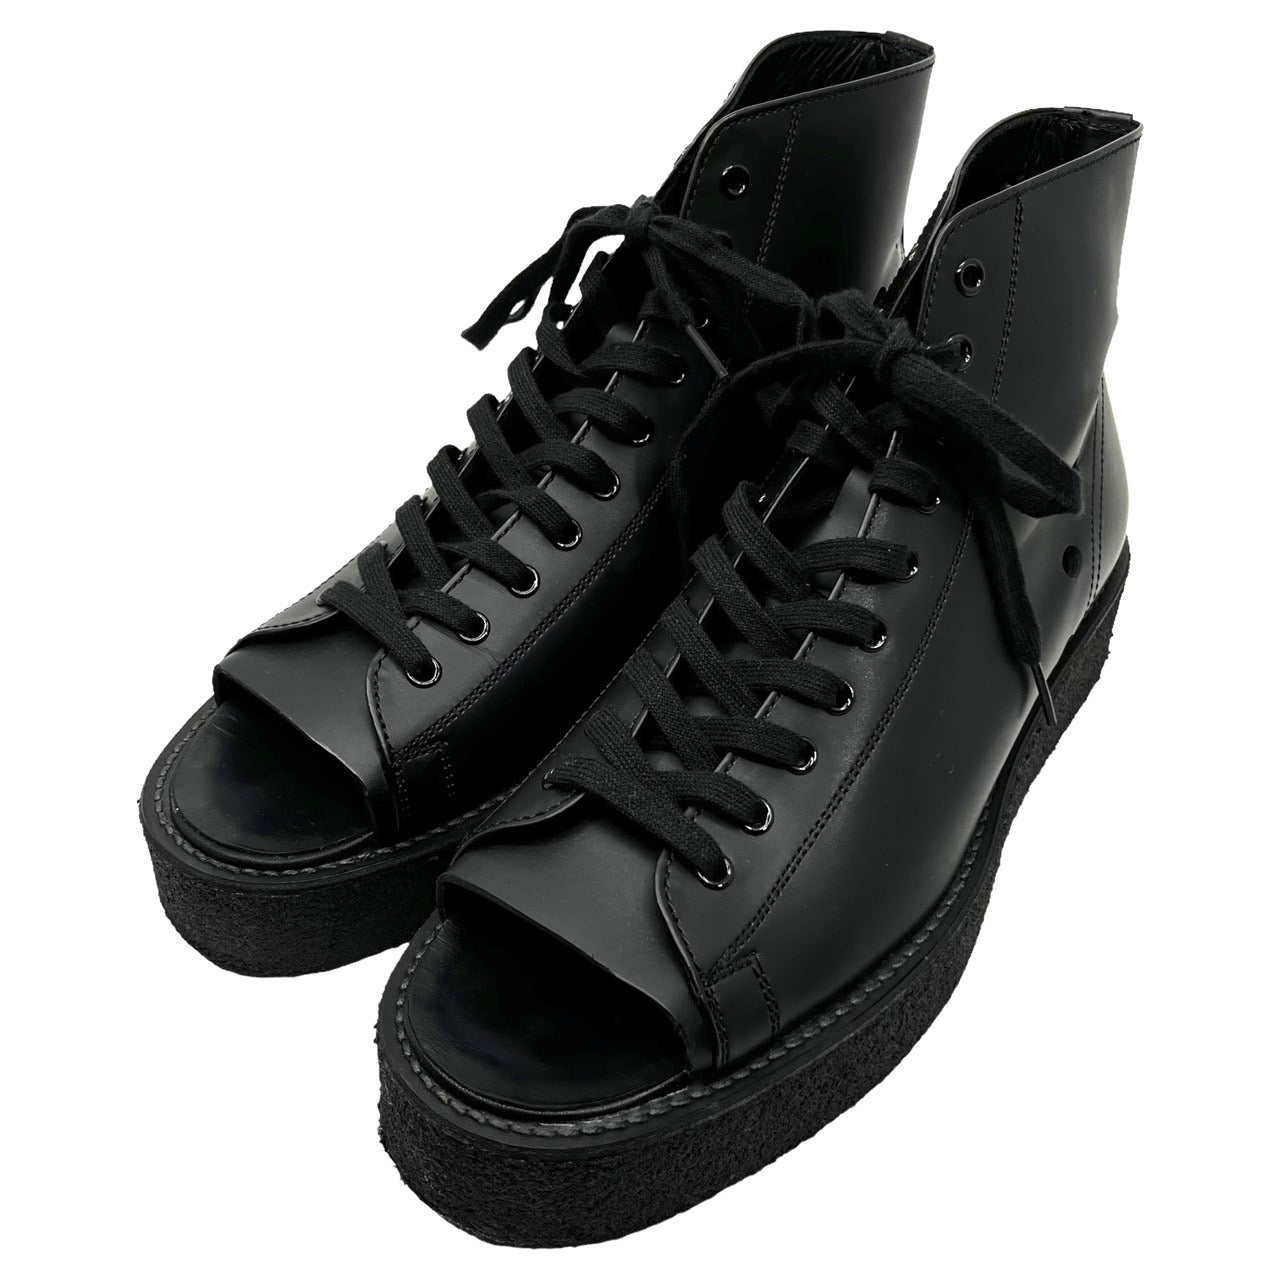 YOHJI YAMAMOTO POUR HOMME(ヨウジヤマモトプールオム) 23SS toe cut shoes/トゥカットシューズ/革靴/ブーツ  HZ-E07-775-1-03 SIZE 27.5cm ブラック 箱付